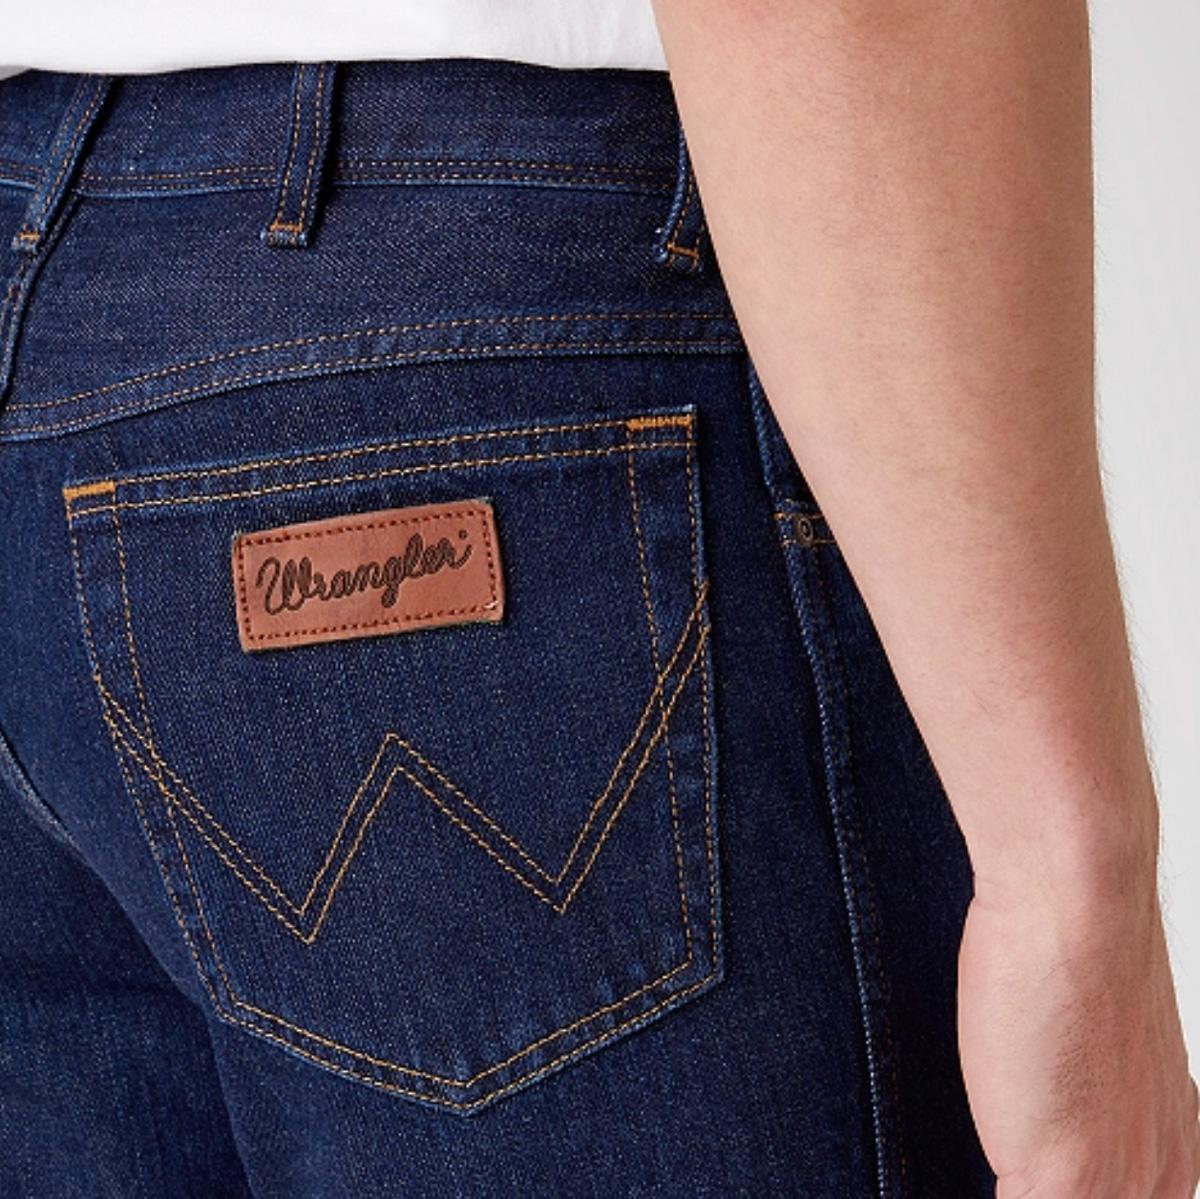 Wrangler Jeans Length Chart